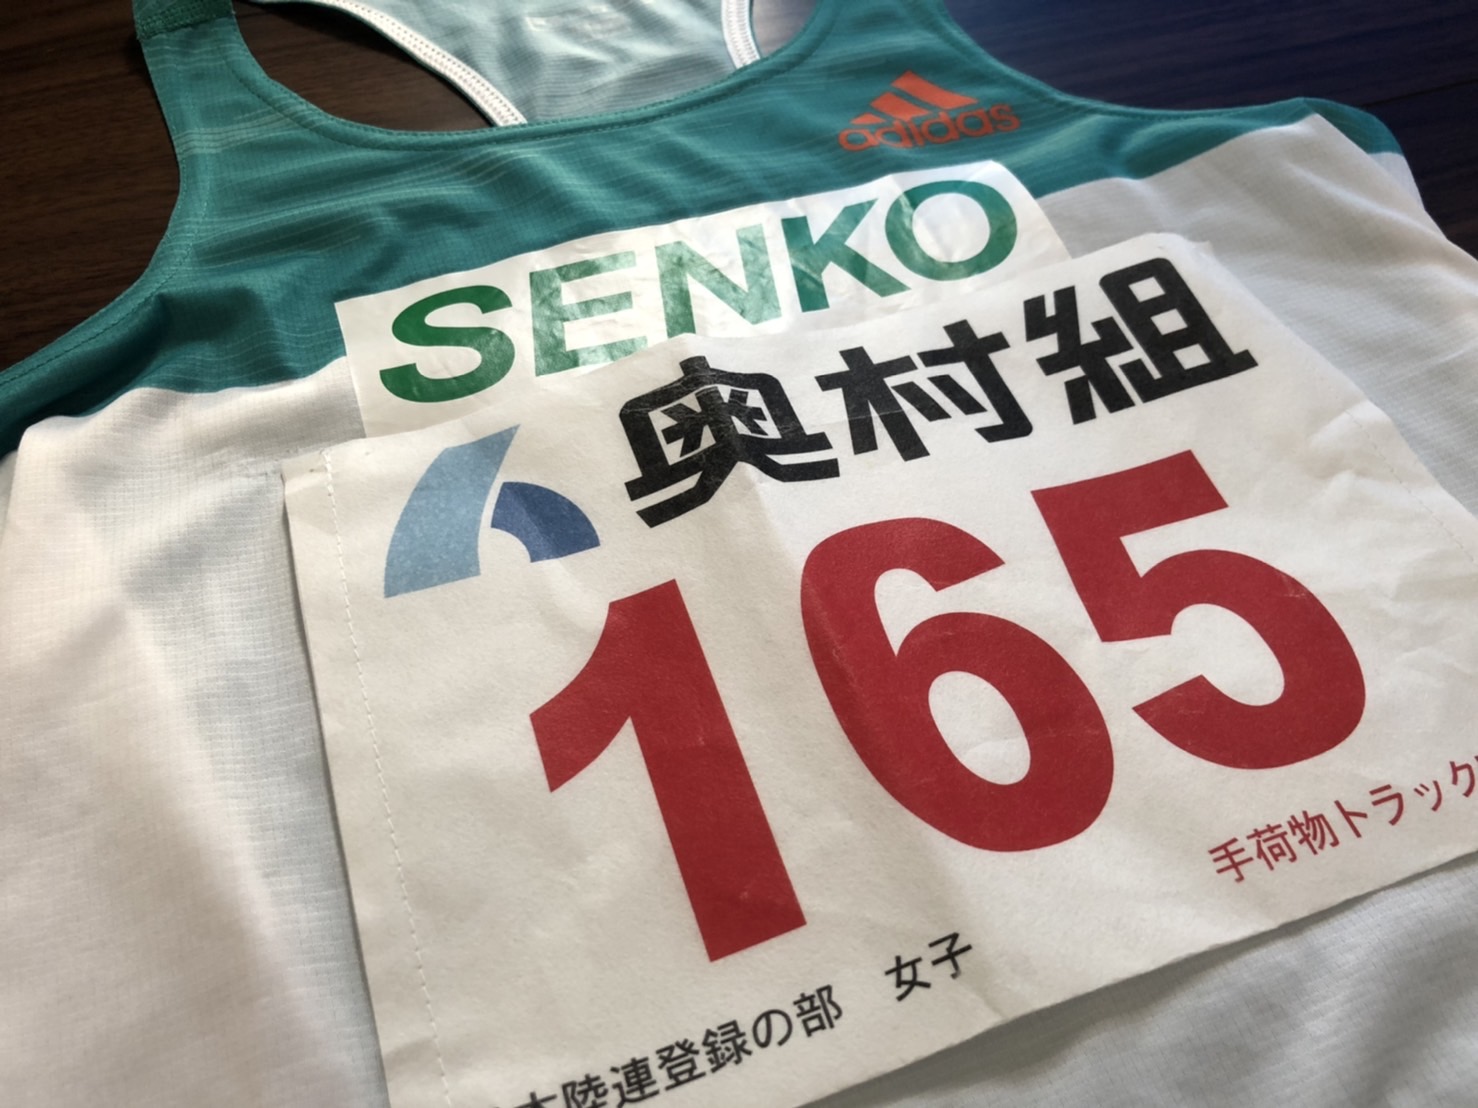 大阪ハーフマラソン